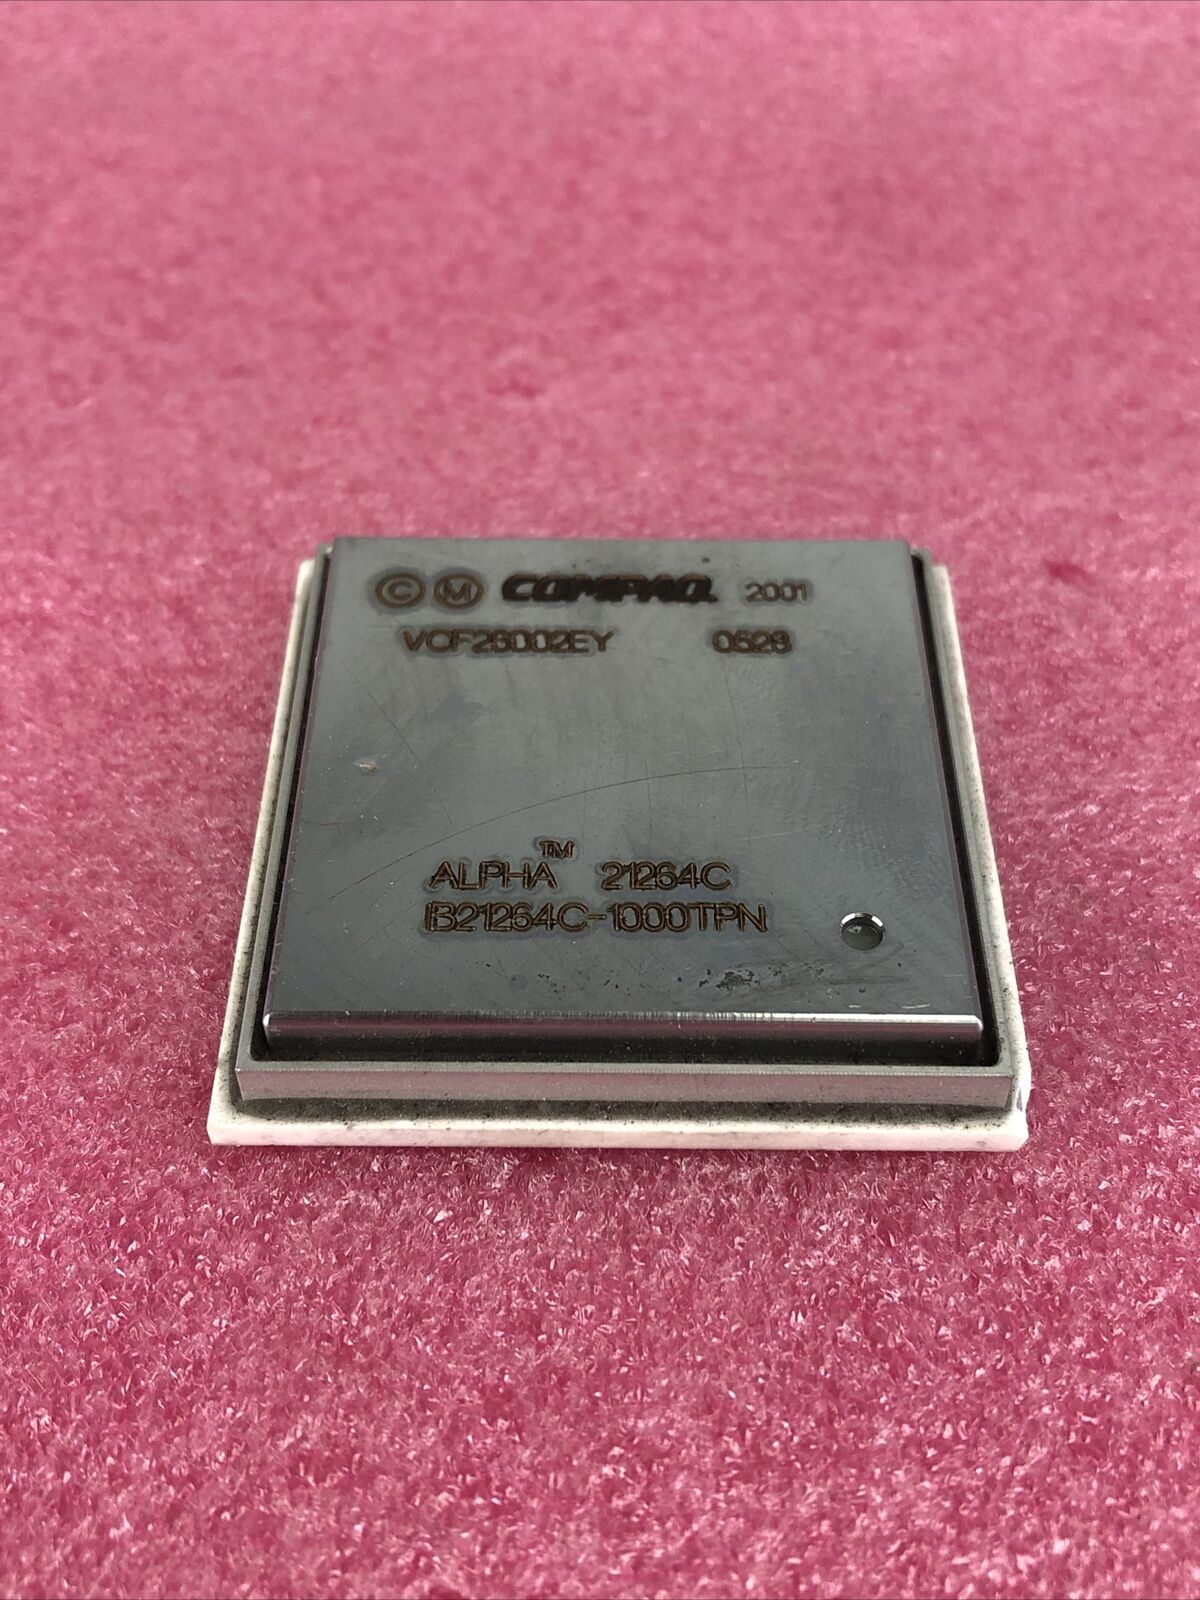 Compaq Alpha 21264C B21264C-1000TPN 1GHz Processor